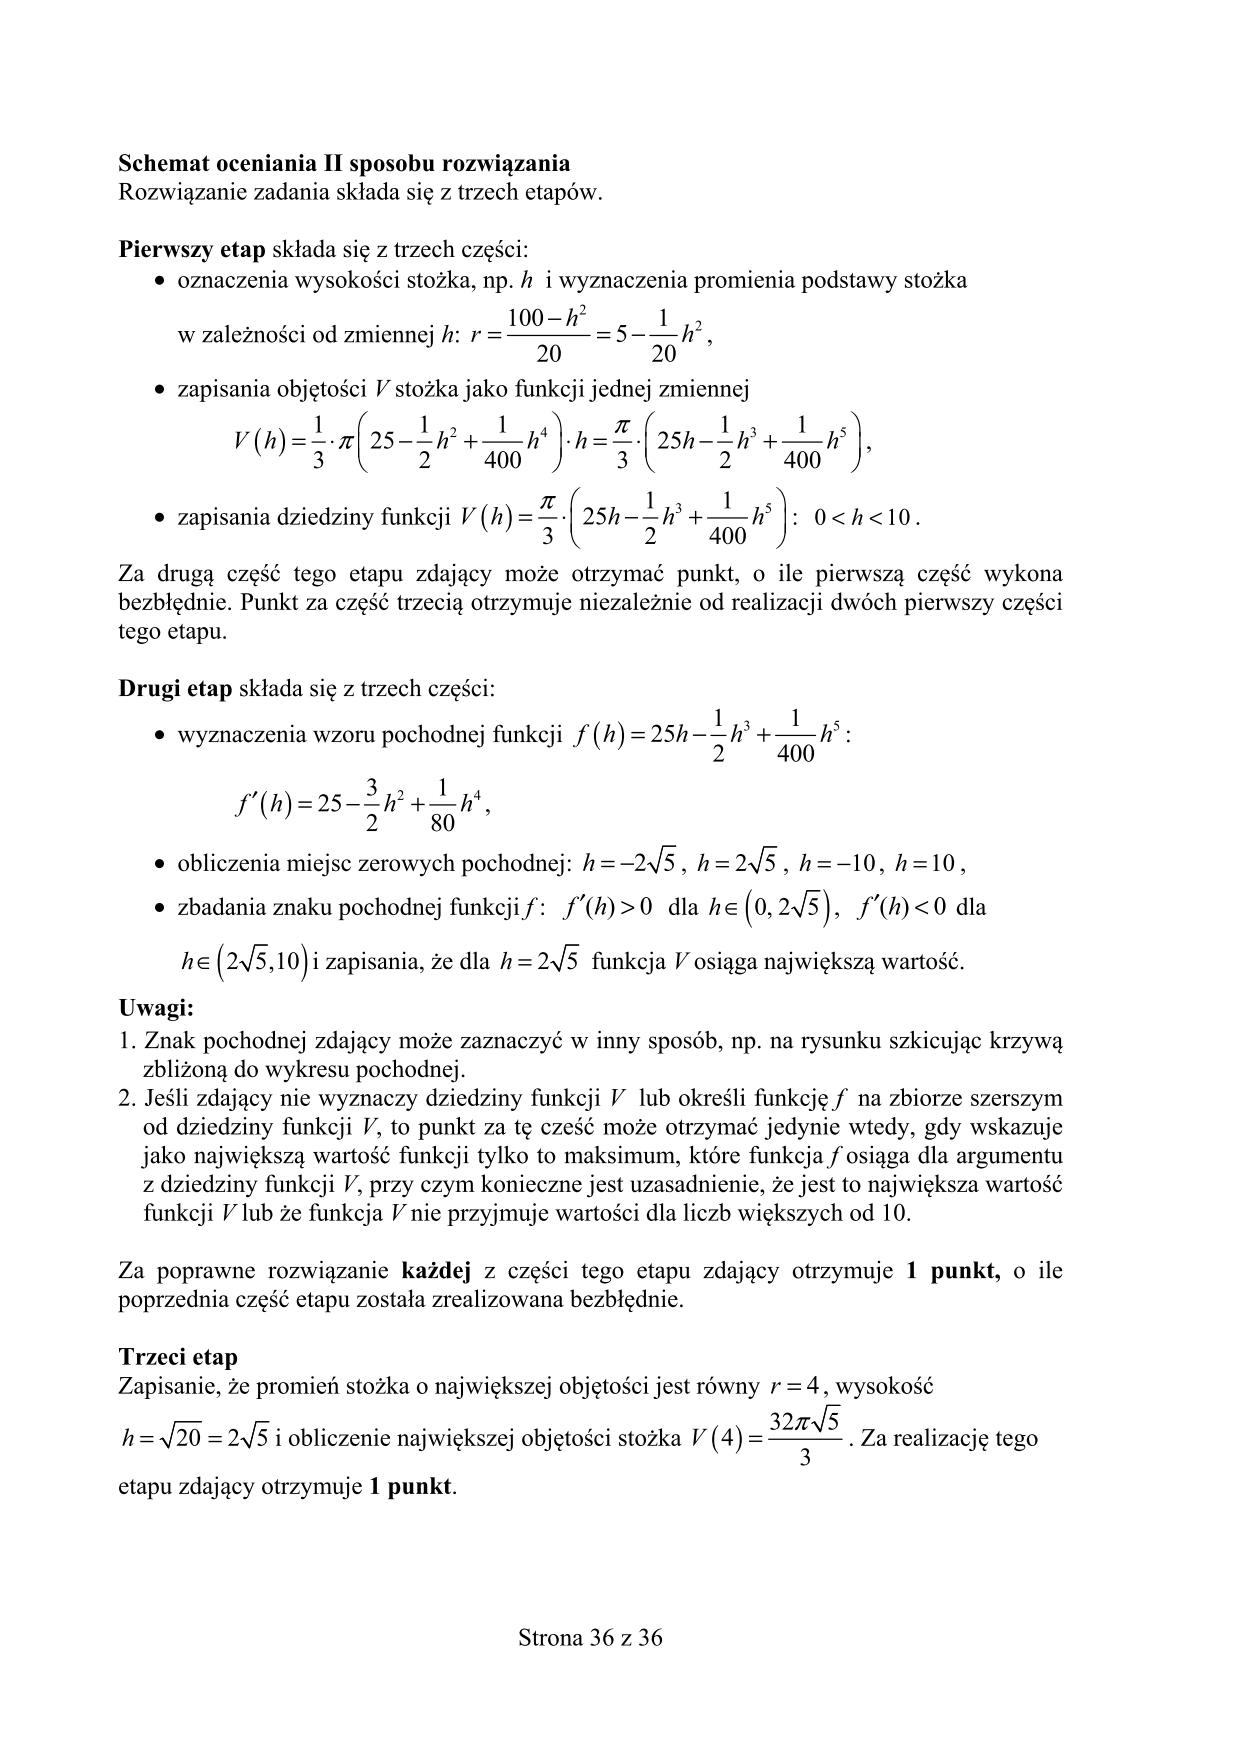 odpowiedzi-matematyka-poziom-rozszerzony-matura-2015-36